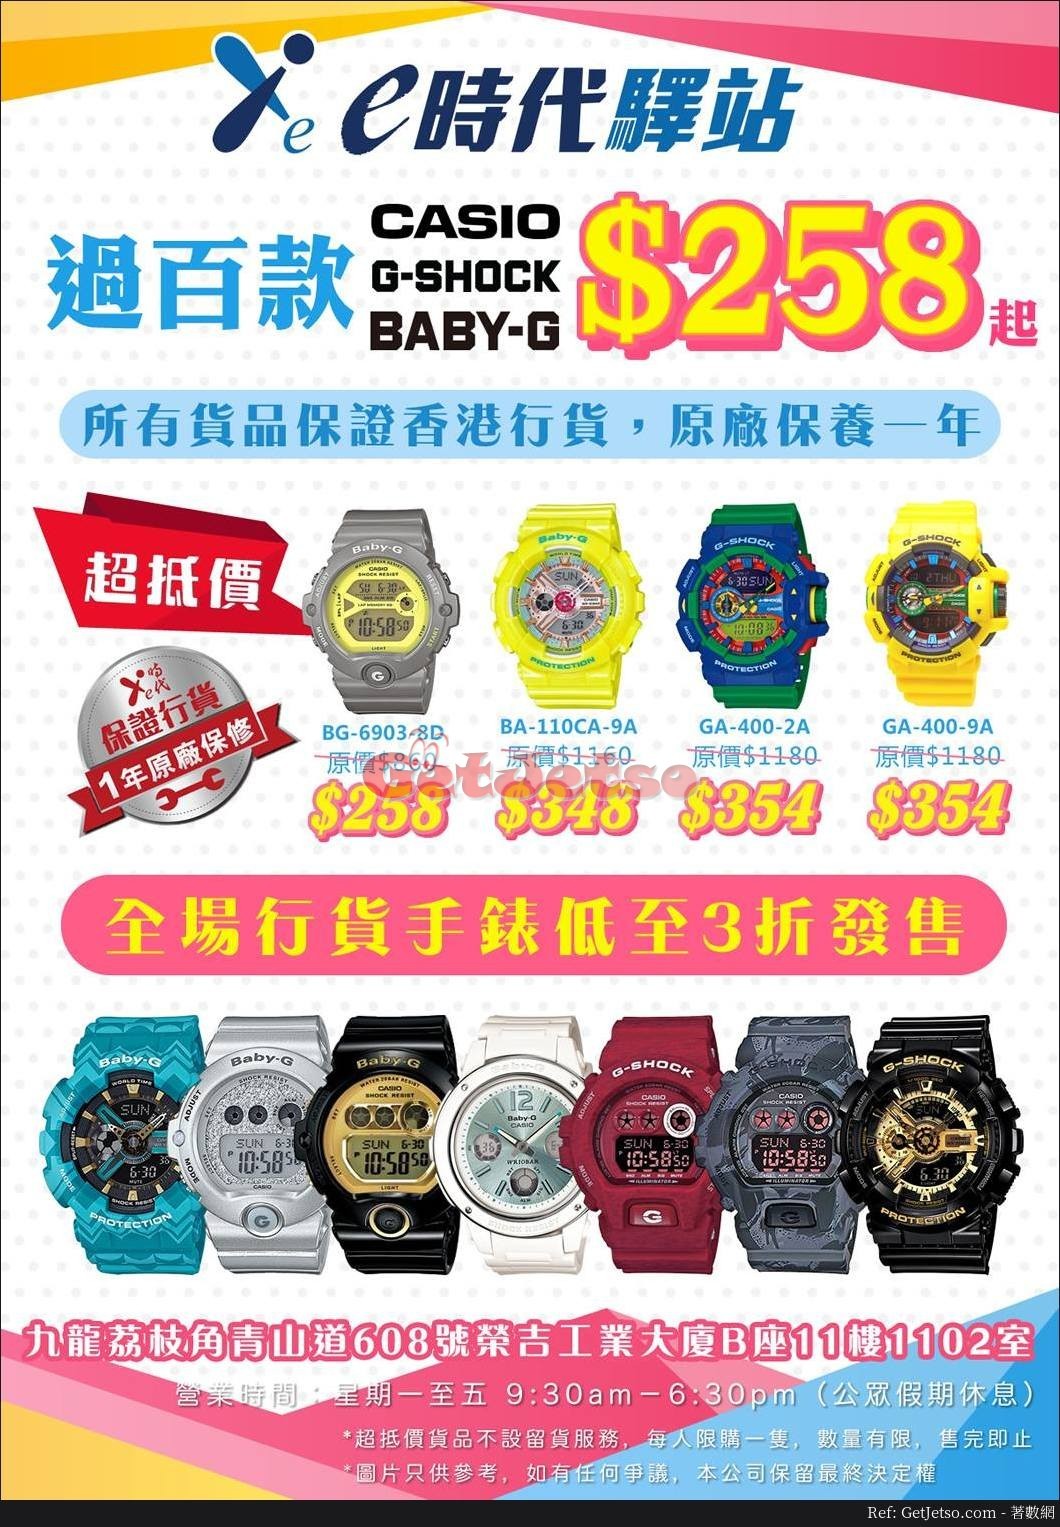 CASIO、G-Shock、Baby-G 手錶低至3折開倉優惠@e時代驛站(18年5月23日起)圖片1